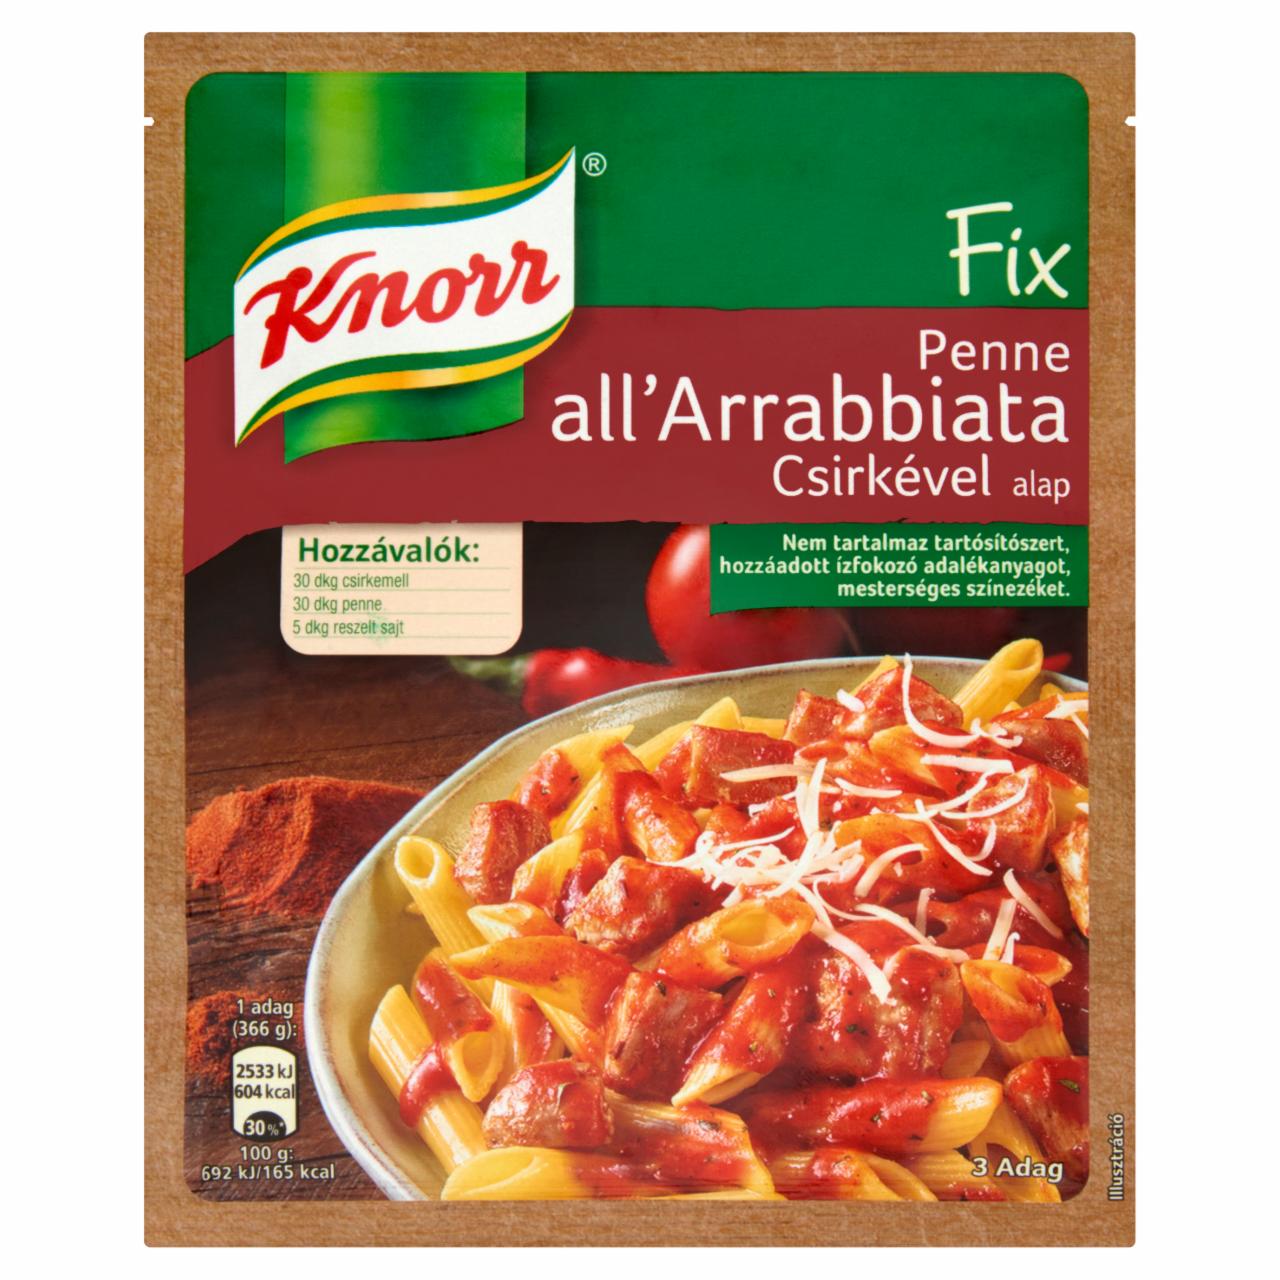 Képek - Knorr Fix Penne all'Arrabbiata csirkével alap 46 g